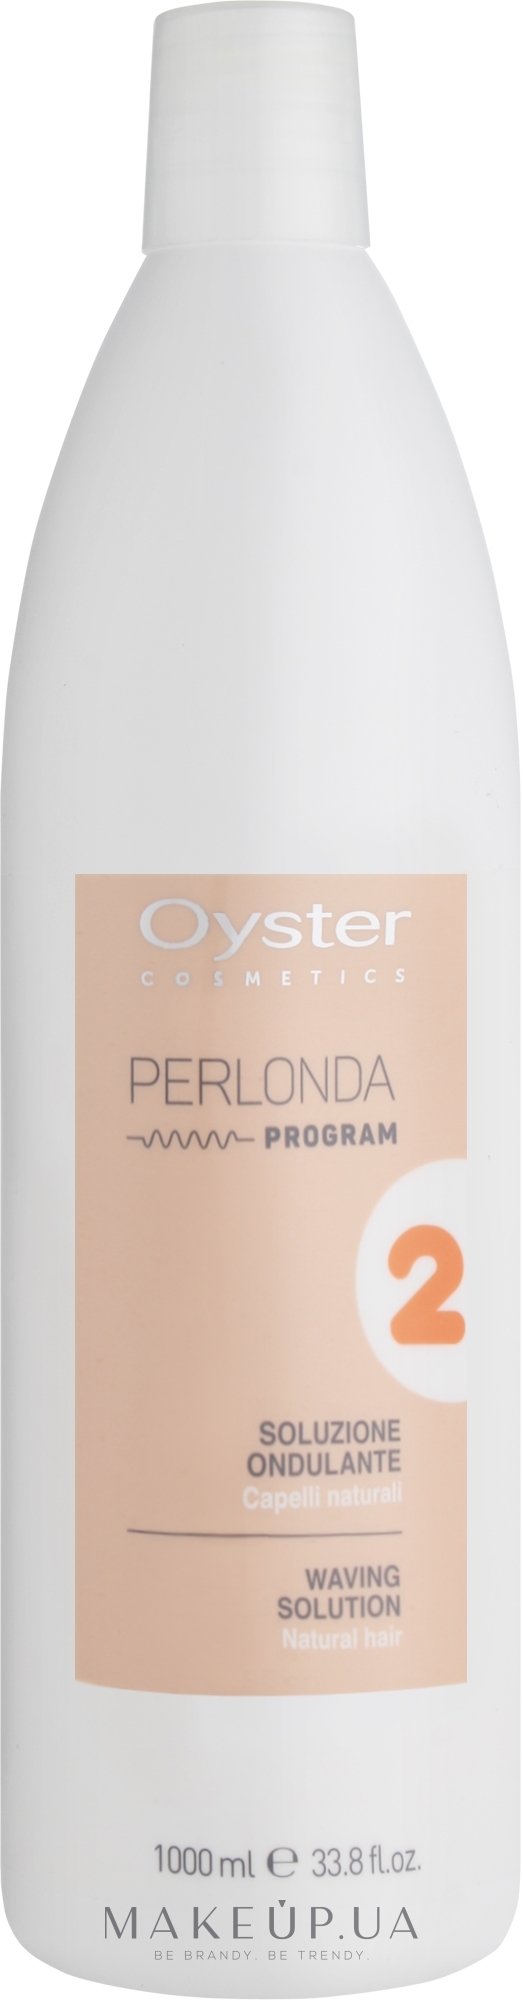 Средство для химической завивки нормальных волос - Oyster Cosmetics Perlonda 2 Normal Hair — фото 1000ml